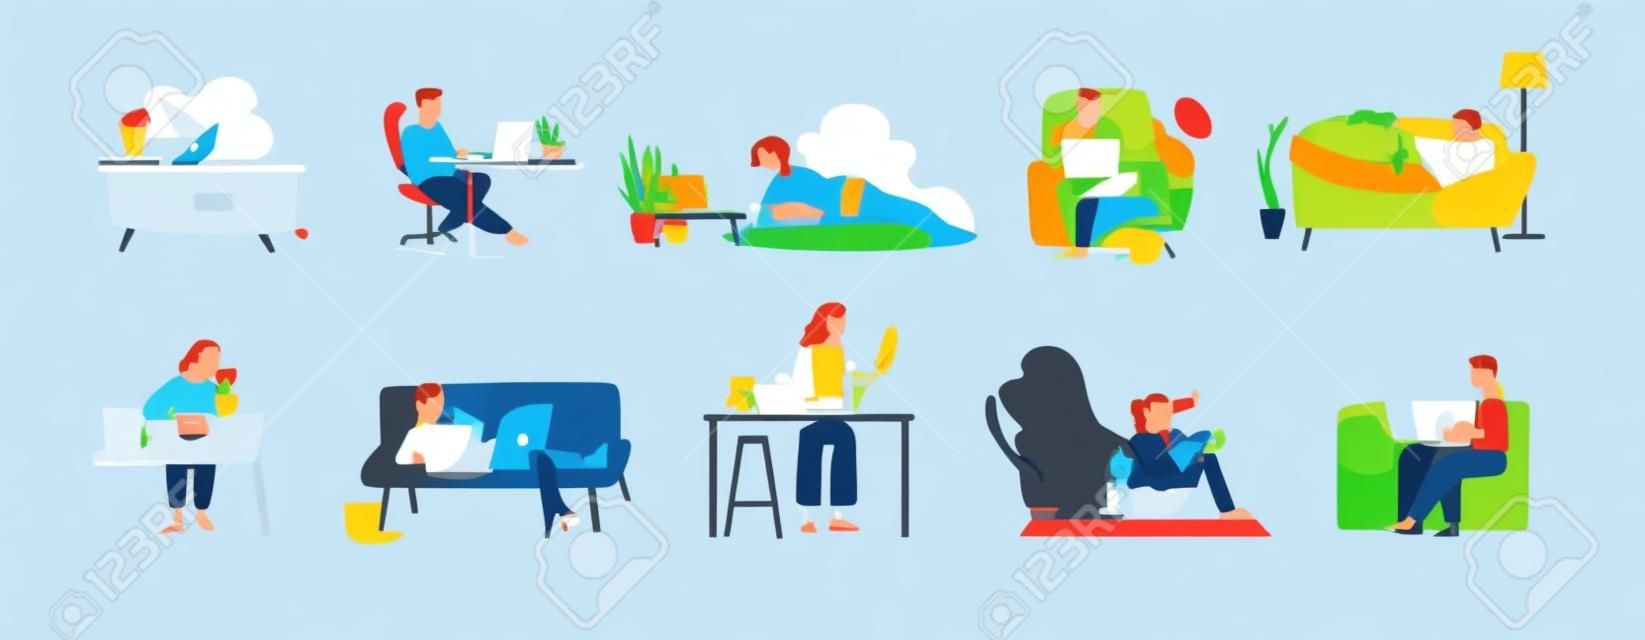 Raccolta di persone che navigano in Internet sui propri computer laptop e tablet. Insieme di uomini e donne che trascorrono del tempo online isolato su sfondo bianco. Illustrazione vettoriale colorato in stile cartone animato piatto